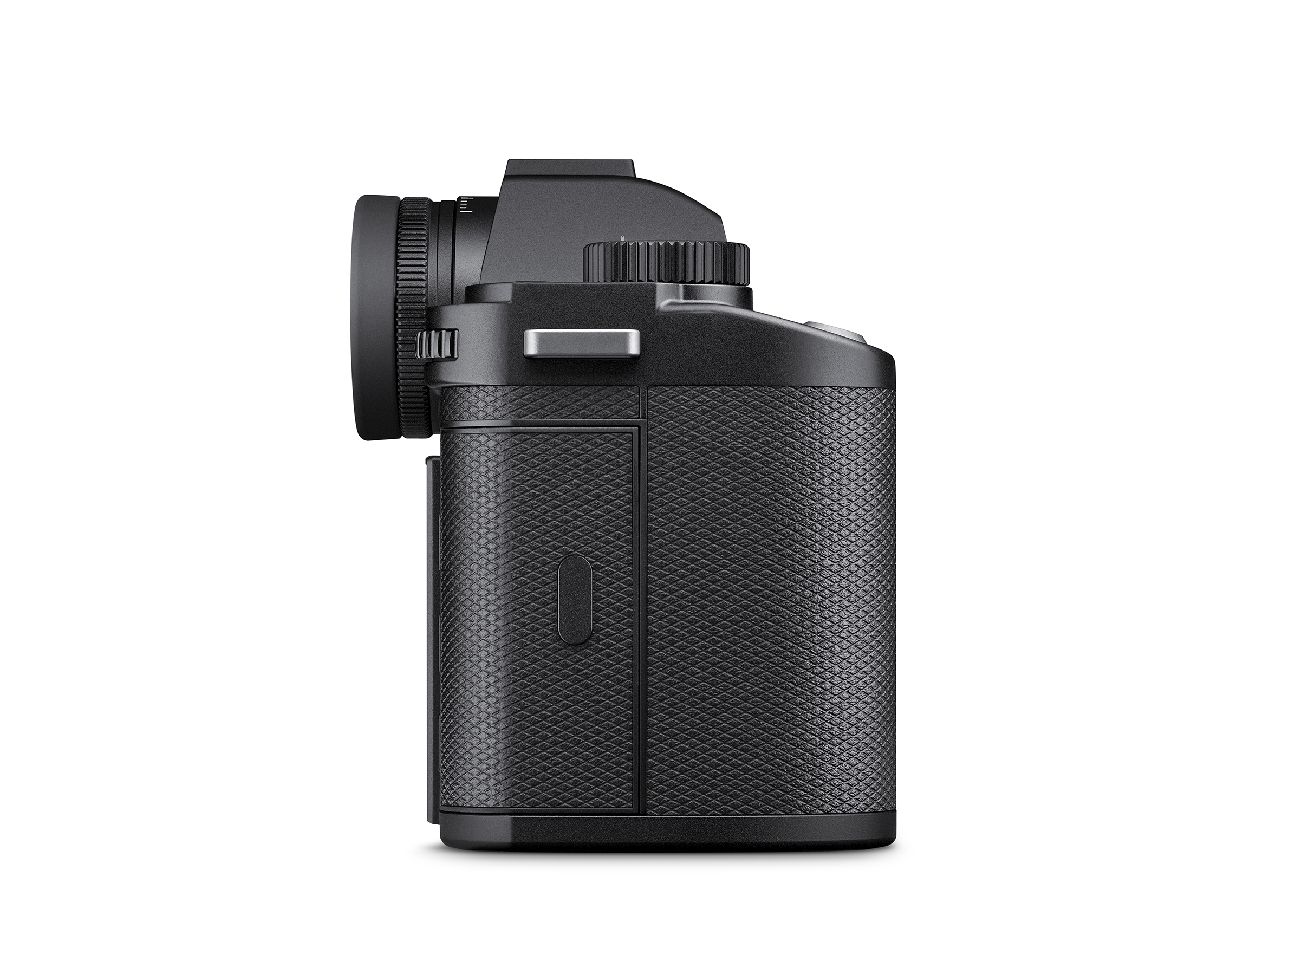 Leica SL3 Gehäuse, schwarz